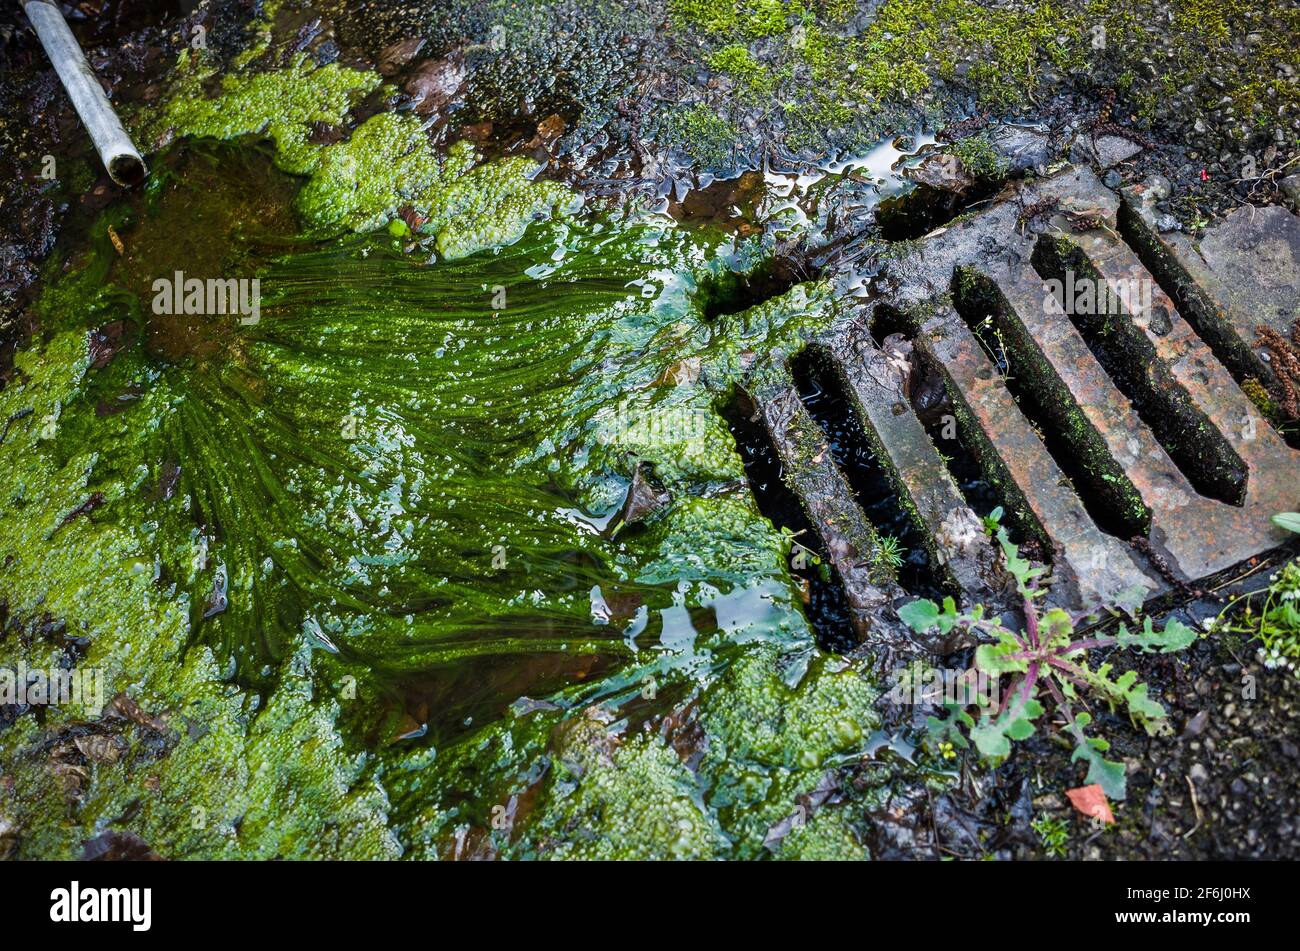 Grüner Schleim und tröpfelndes Wasser aus einem alten Rohr in einen Abfluss  Stockfotografie - Alamy